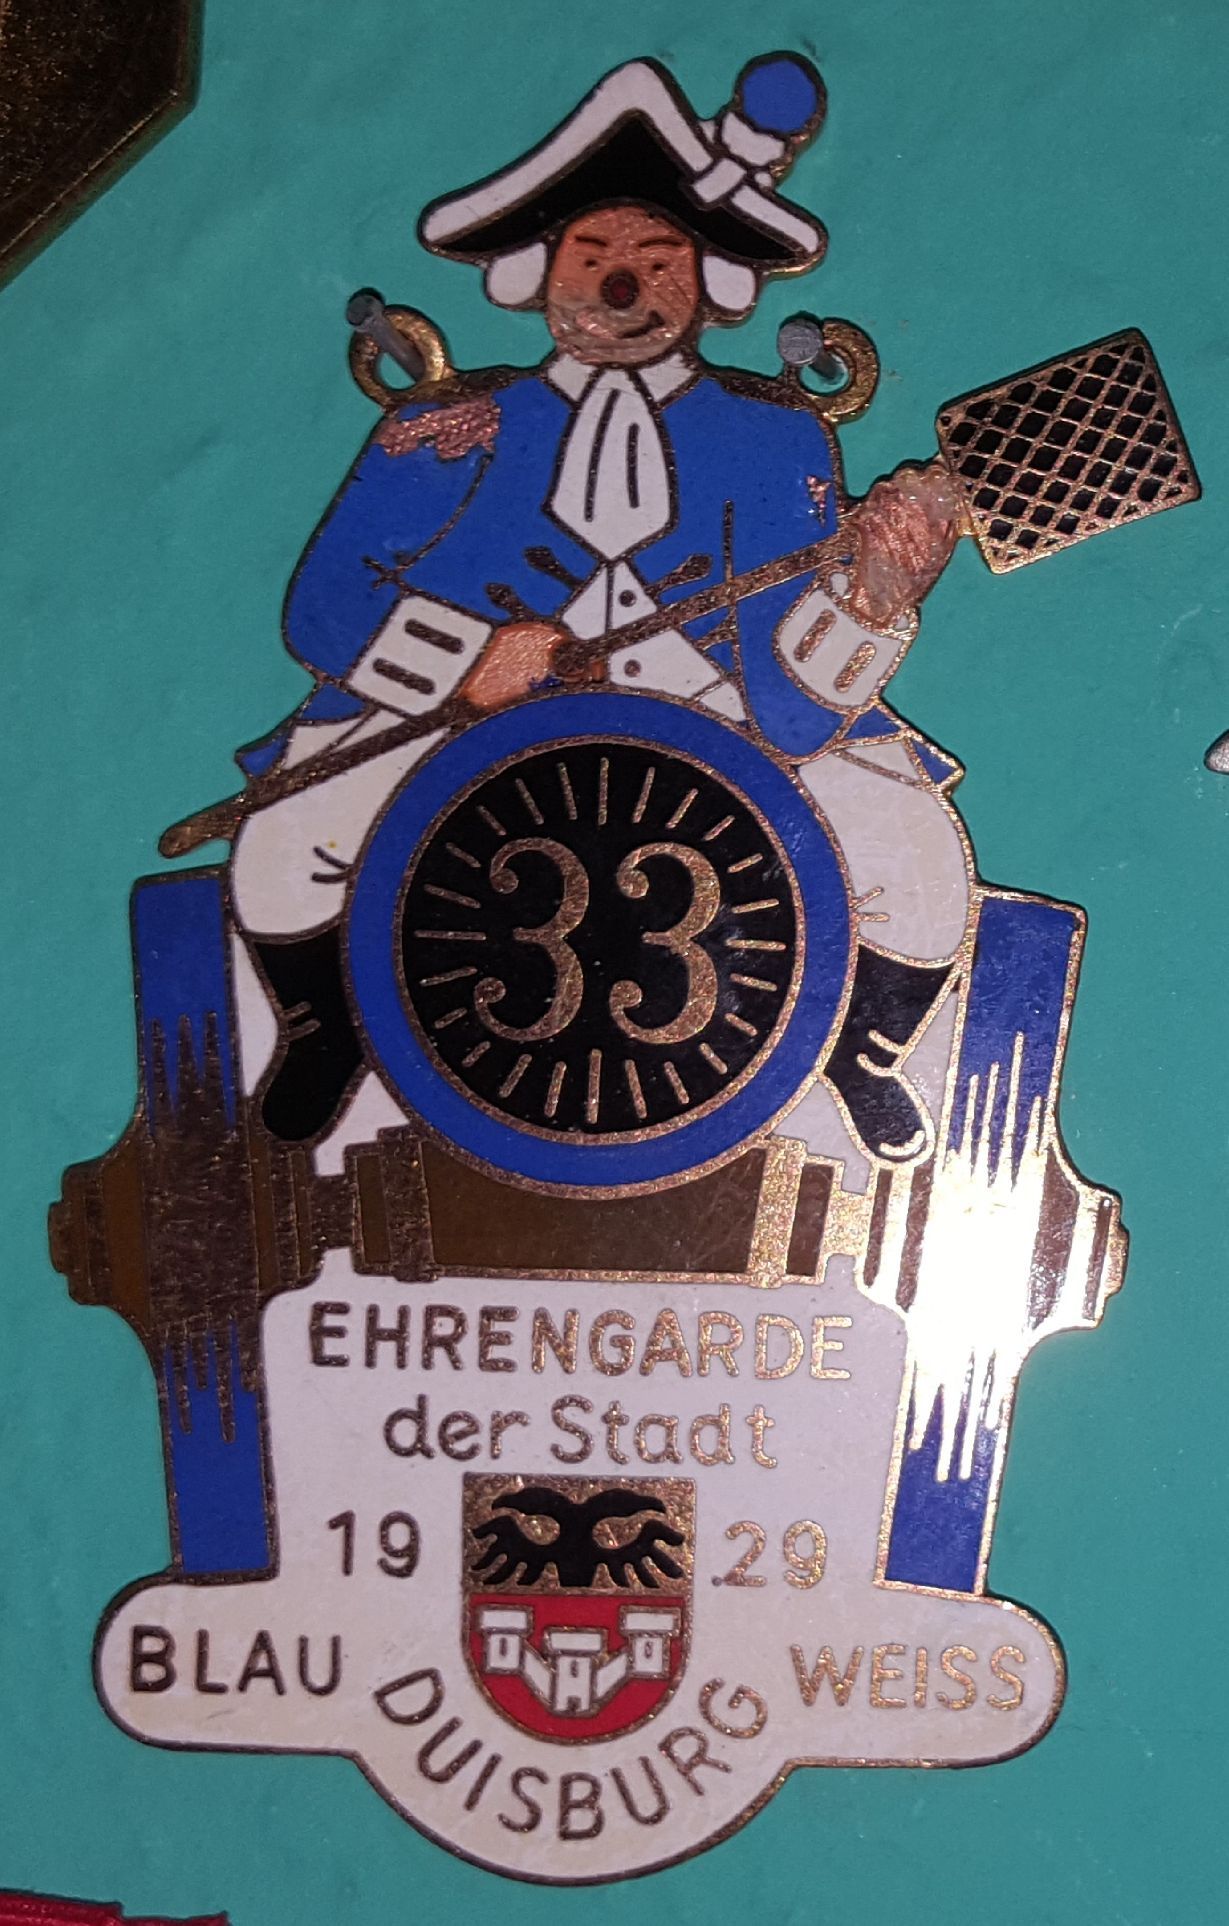 Ehrengarde der Stadt Duisburg Blau Weiss 1929 e.V.